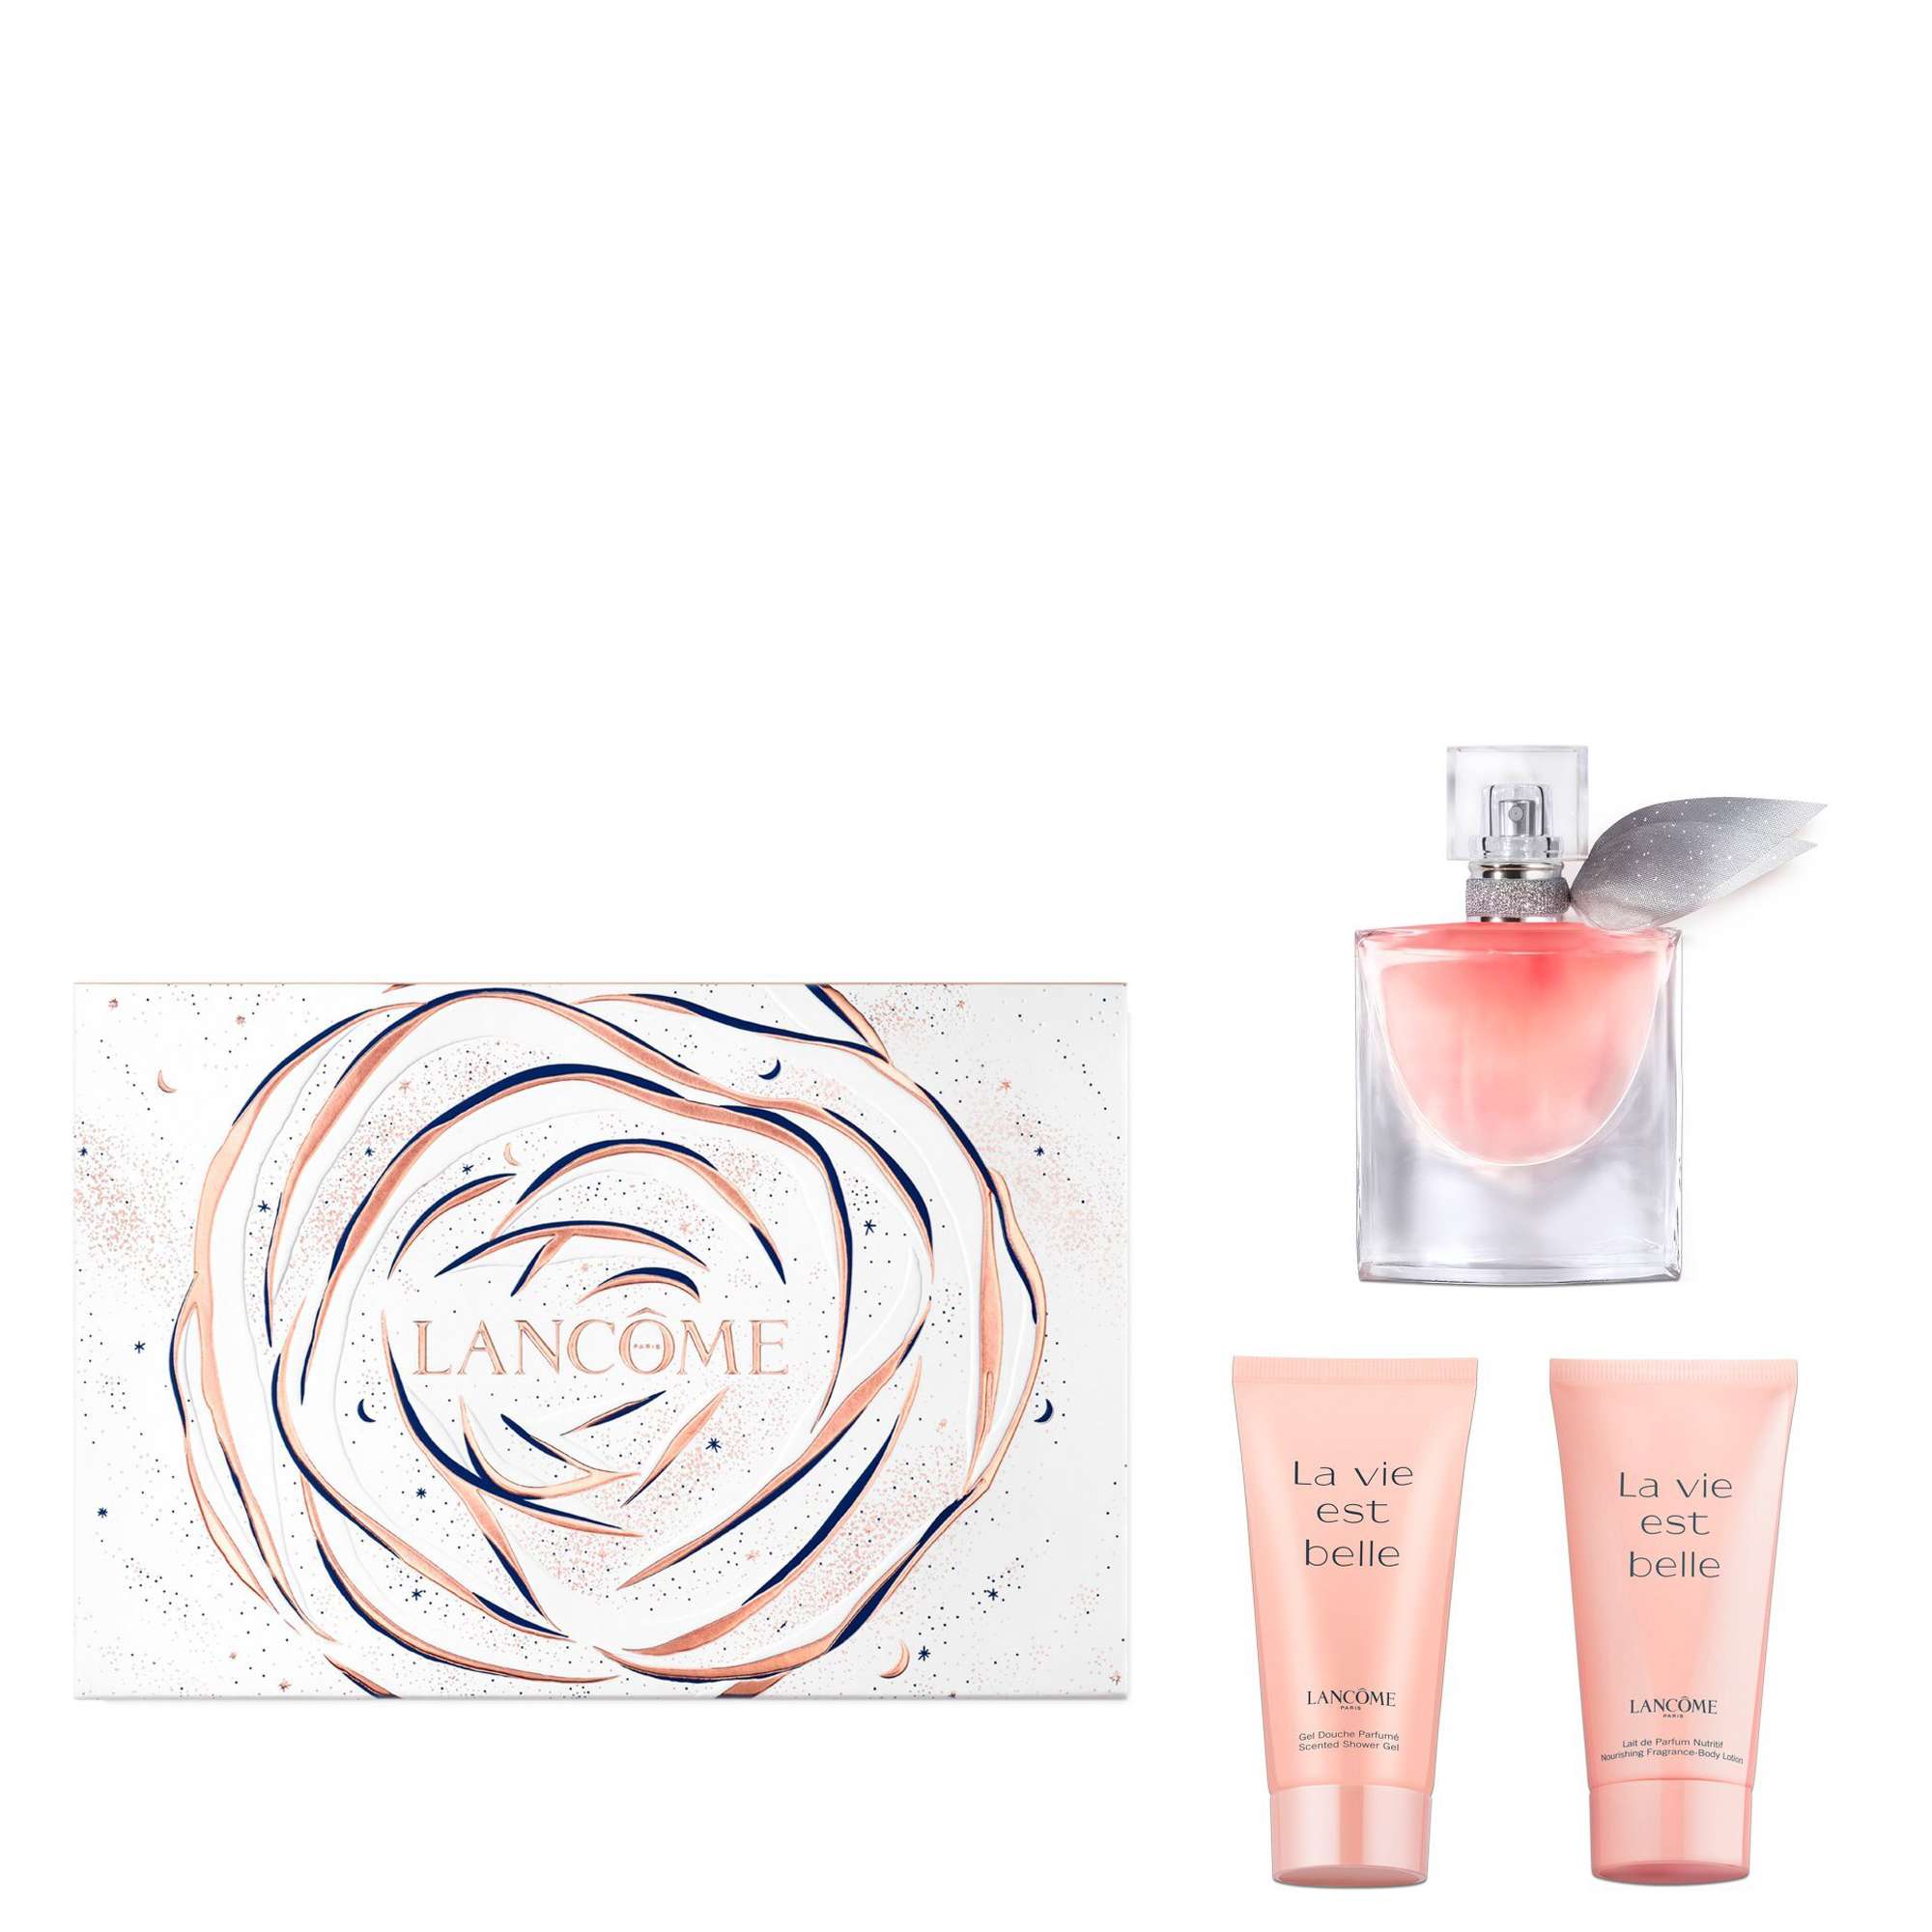 Photos - Women's Fragrance Lancome La Vie Est Belle Eau de Parfum Spray 30ml Gift Set 